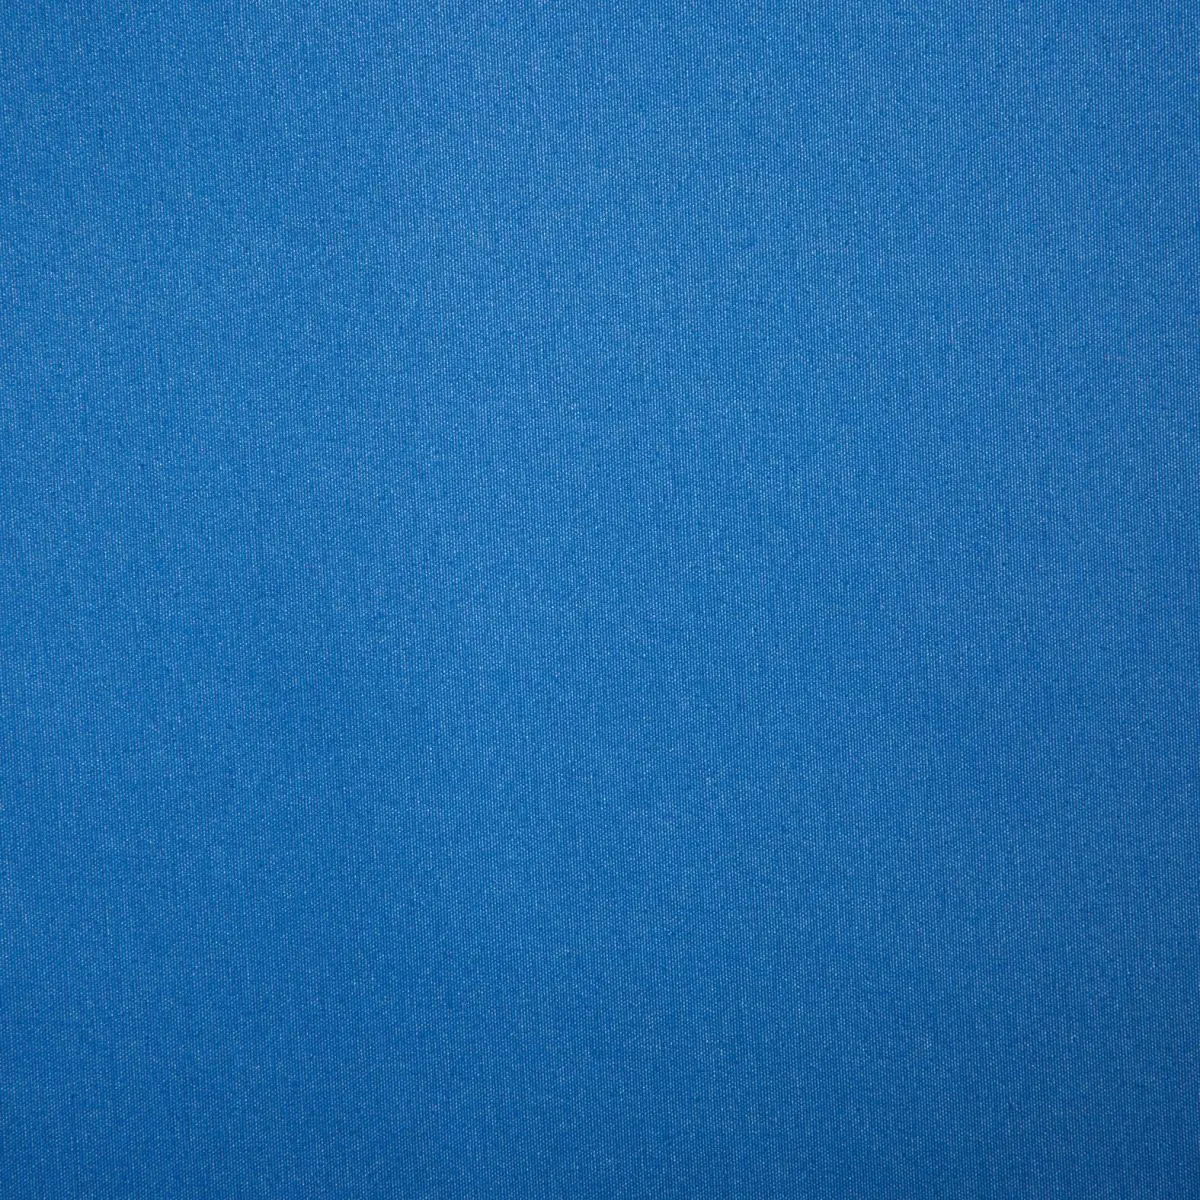 Slnečná strieška Playa - modrá, 350 x 240 cm